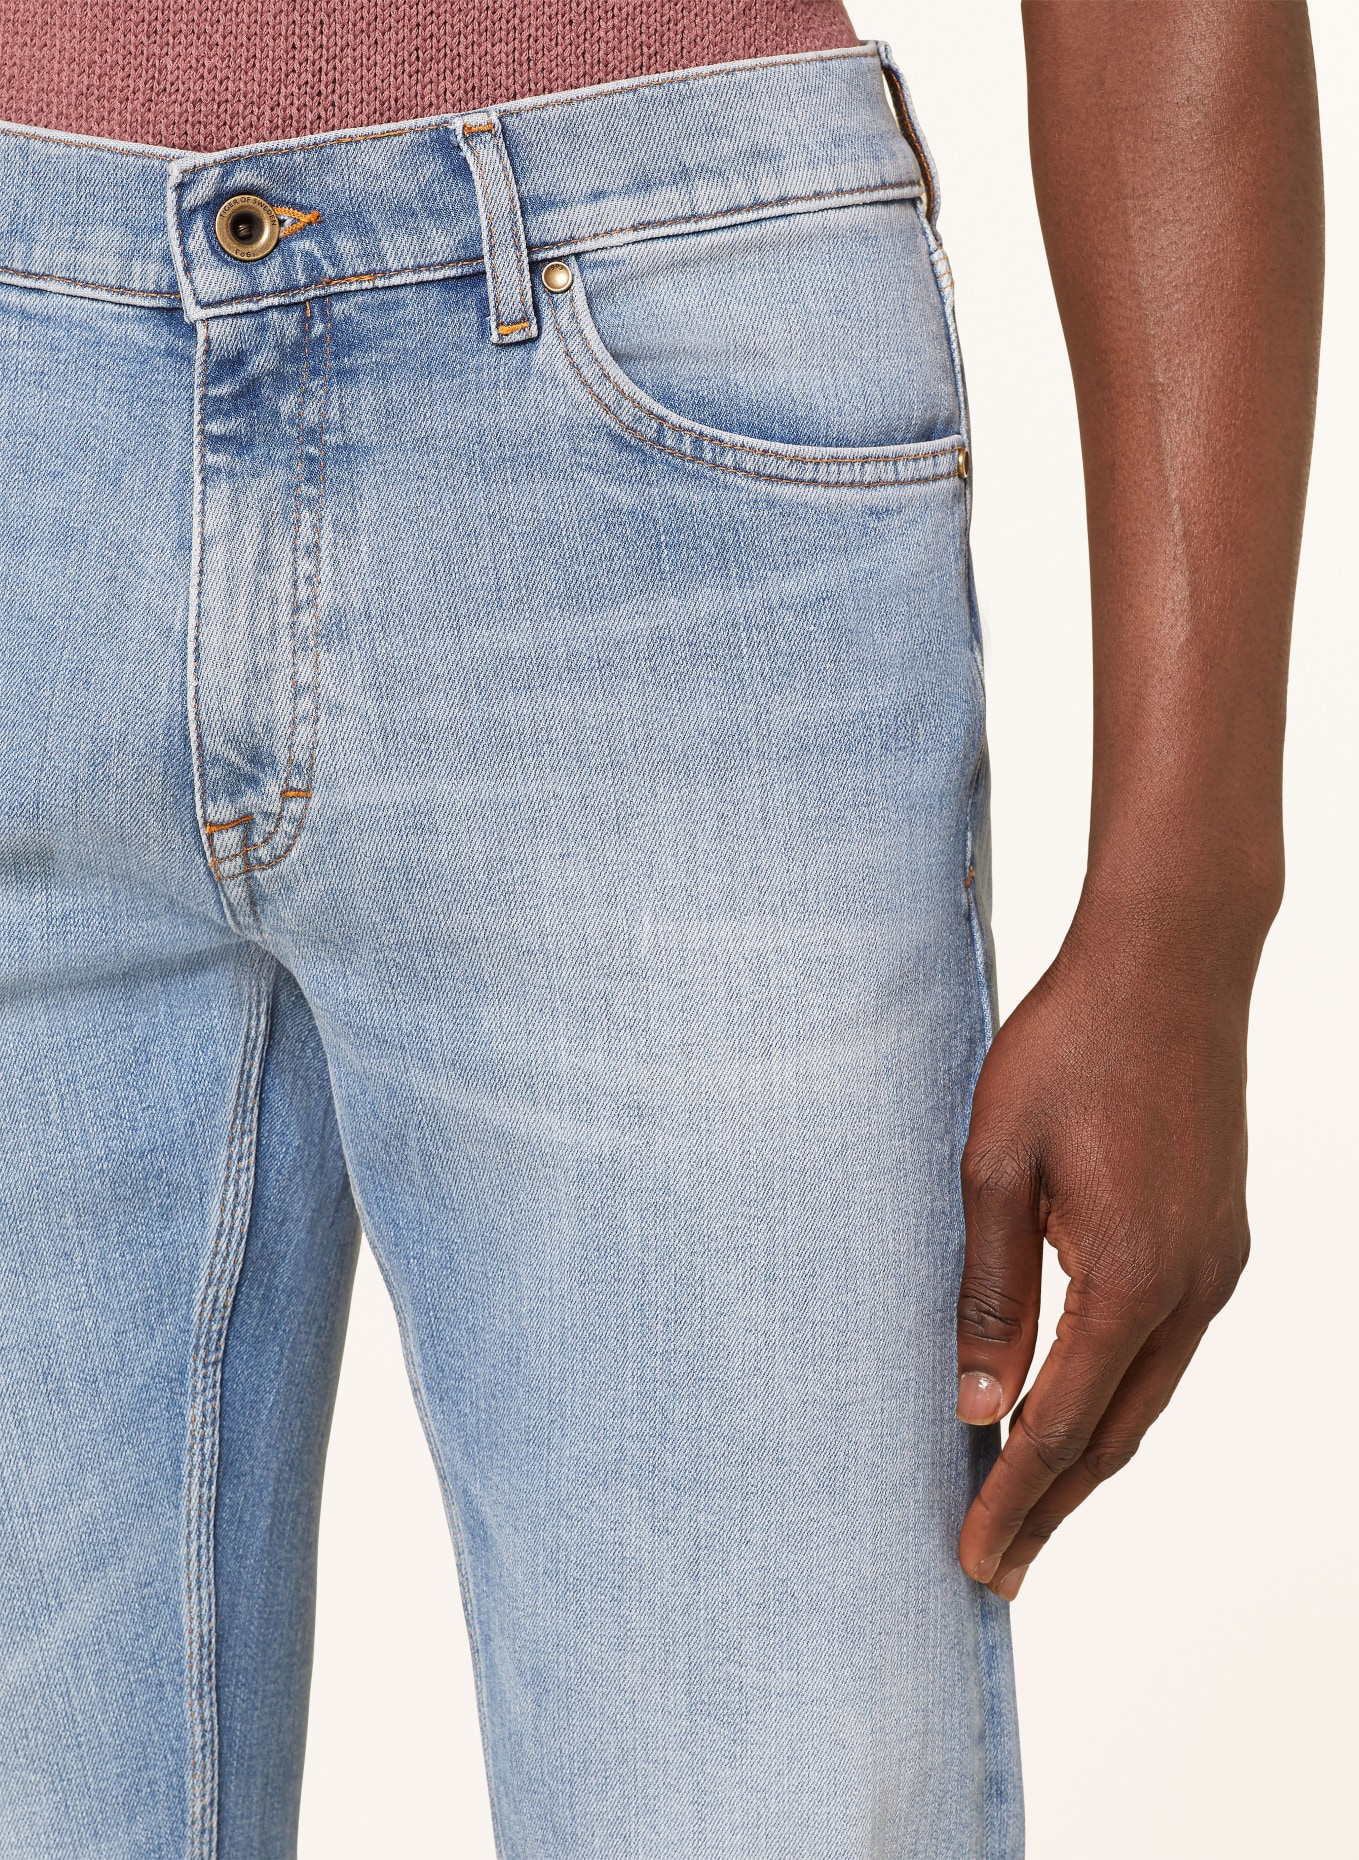 TIGER OF SWEDEN Jeans DES slim fit, Color: 200 Light blue (Image 5)